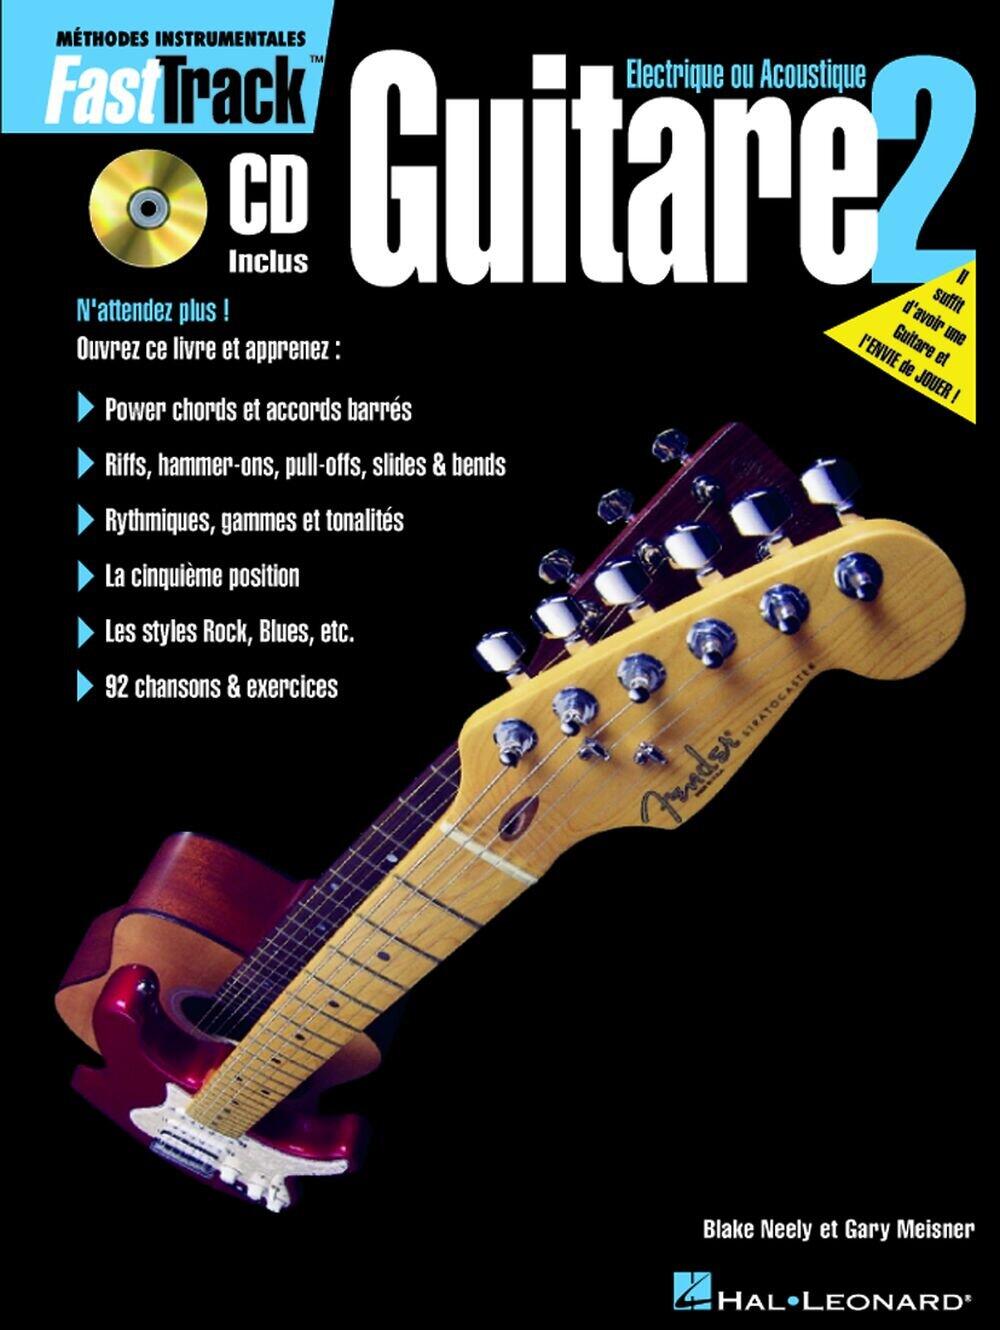 FastTrack Guitare 2 : photo 1